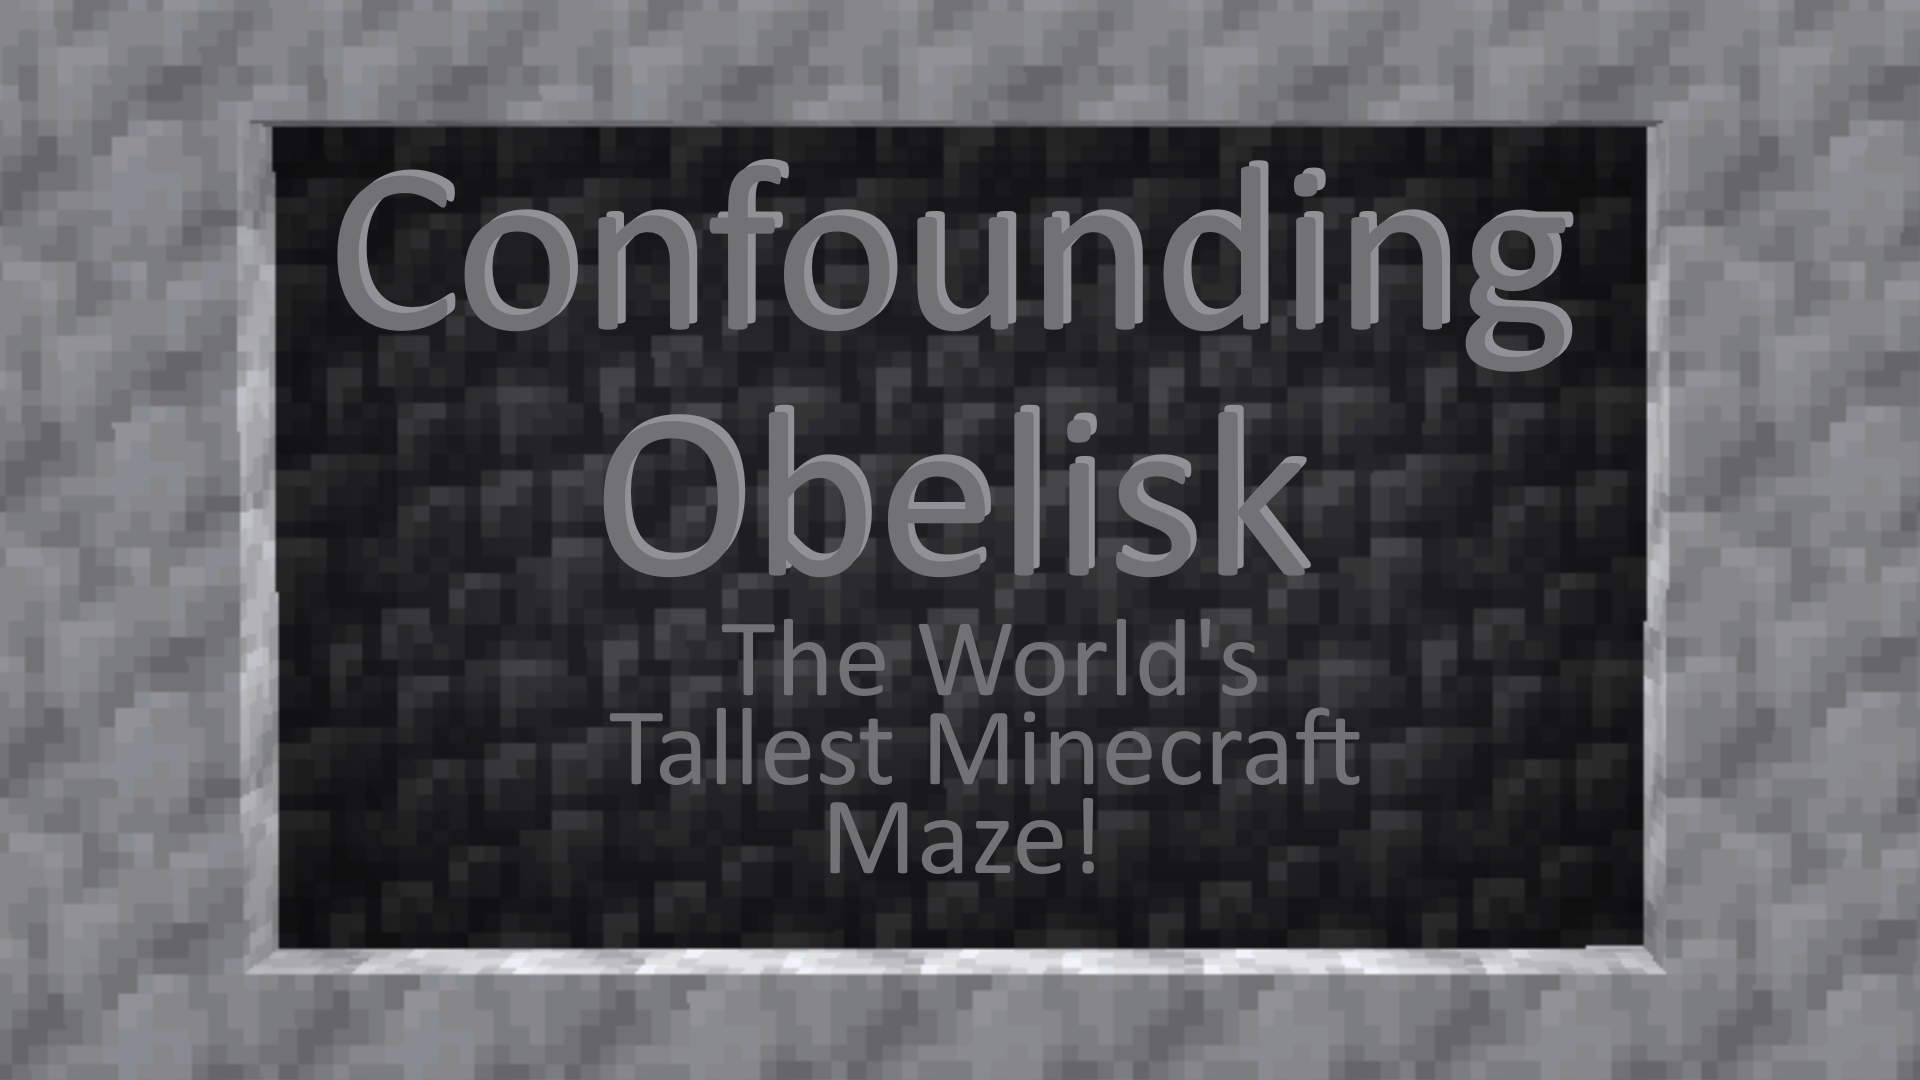 Download Confounding Obelisk for Minecraft 1.17.1